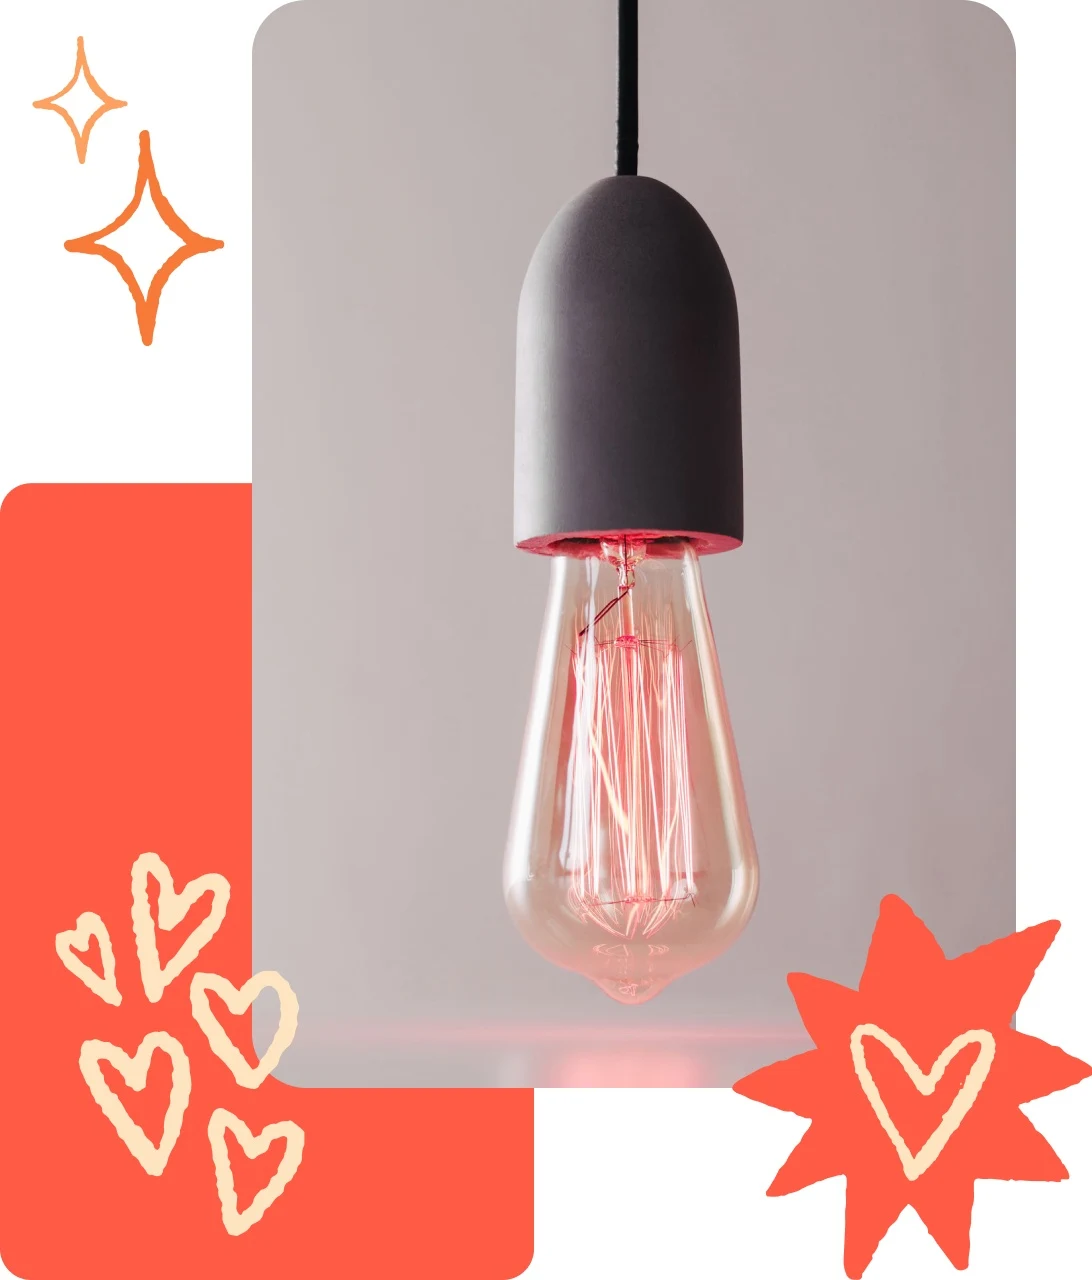 Collage d’épingles avec une ampoule moderne pendante, une épingle orange et des illustrations en forme de cœur